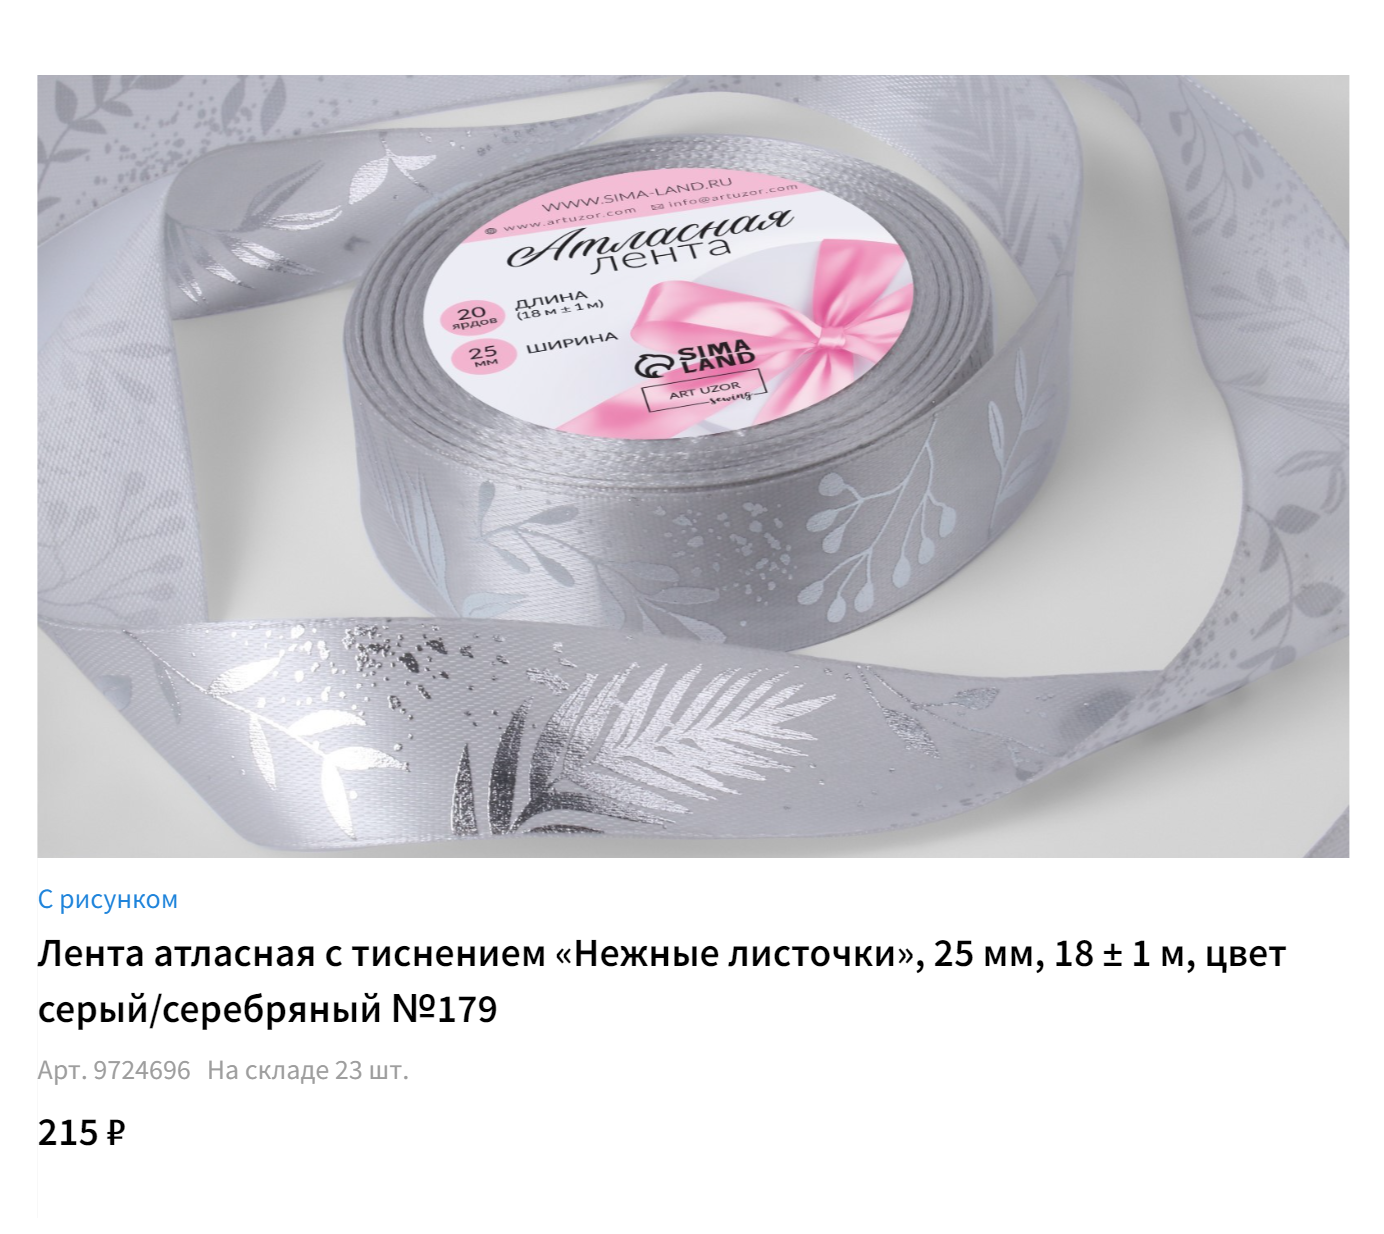 Упаковочная лента в ассортименте, из которой можно сделать бантики. Источник: sima-land.ru